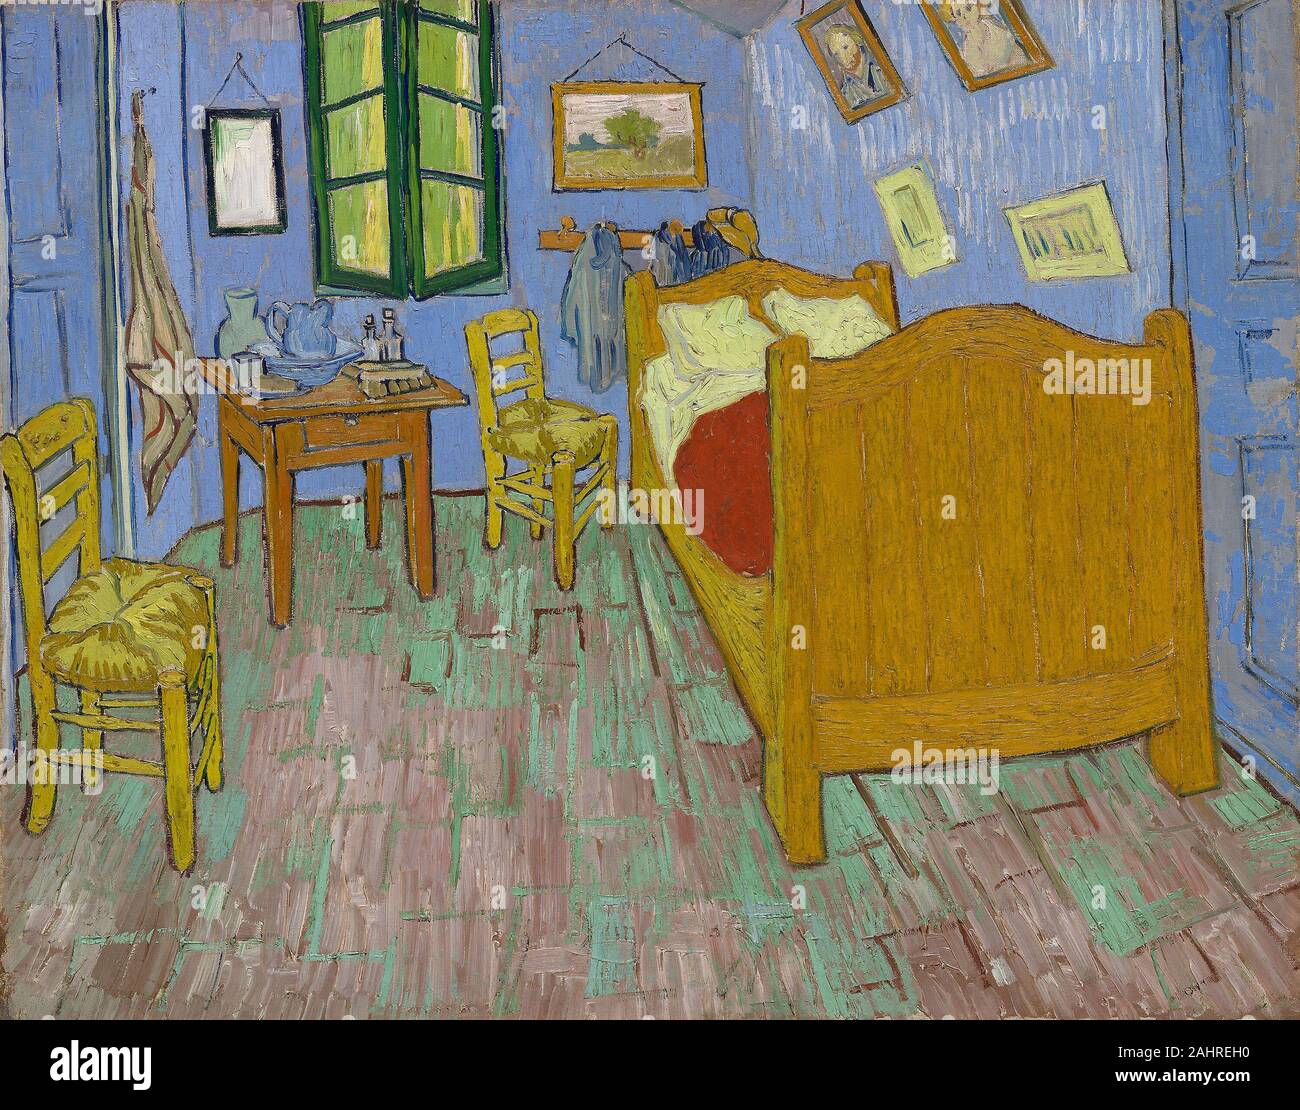 Vincent van Gogh. Das Schlafzimmer. 1889. Niederlande. Öl auf Leinwand Vincent van Gogh so hoch geschätzten sein Schlafzimmer Malerei, machte er drei verschiedene Versionen der ersten, jetzt in der Sammlung des Van Gogh Museum, Amsterdam; der zweite, der Zugehörigkeit zu der Kunst Institut von Chicago, ein Jahr später malte auf der gleichen Skala und fast identisch; und eine dritte, kleinere Leinwand in der Sammlung des Musée d'Orsay, Paris, die er als Geschenk für seine Mutter und seine Schwester gemacht. Van Gogh konzipiert Das erste Schlafzimmer im Oktober 1888, einen Monat, nachdem er sich in seine "Gelben Haus" in Arles, Frankreich bewegt. Dieses Moment m Stockfoto